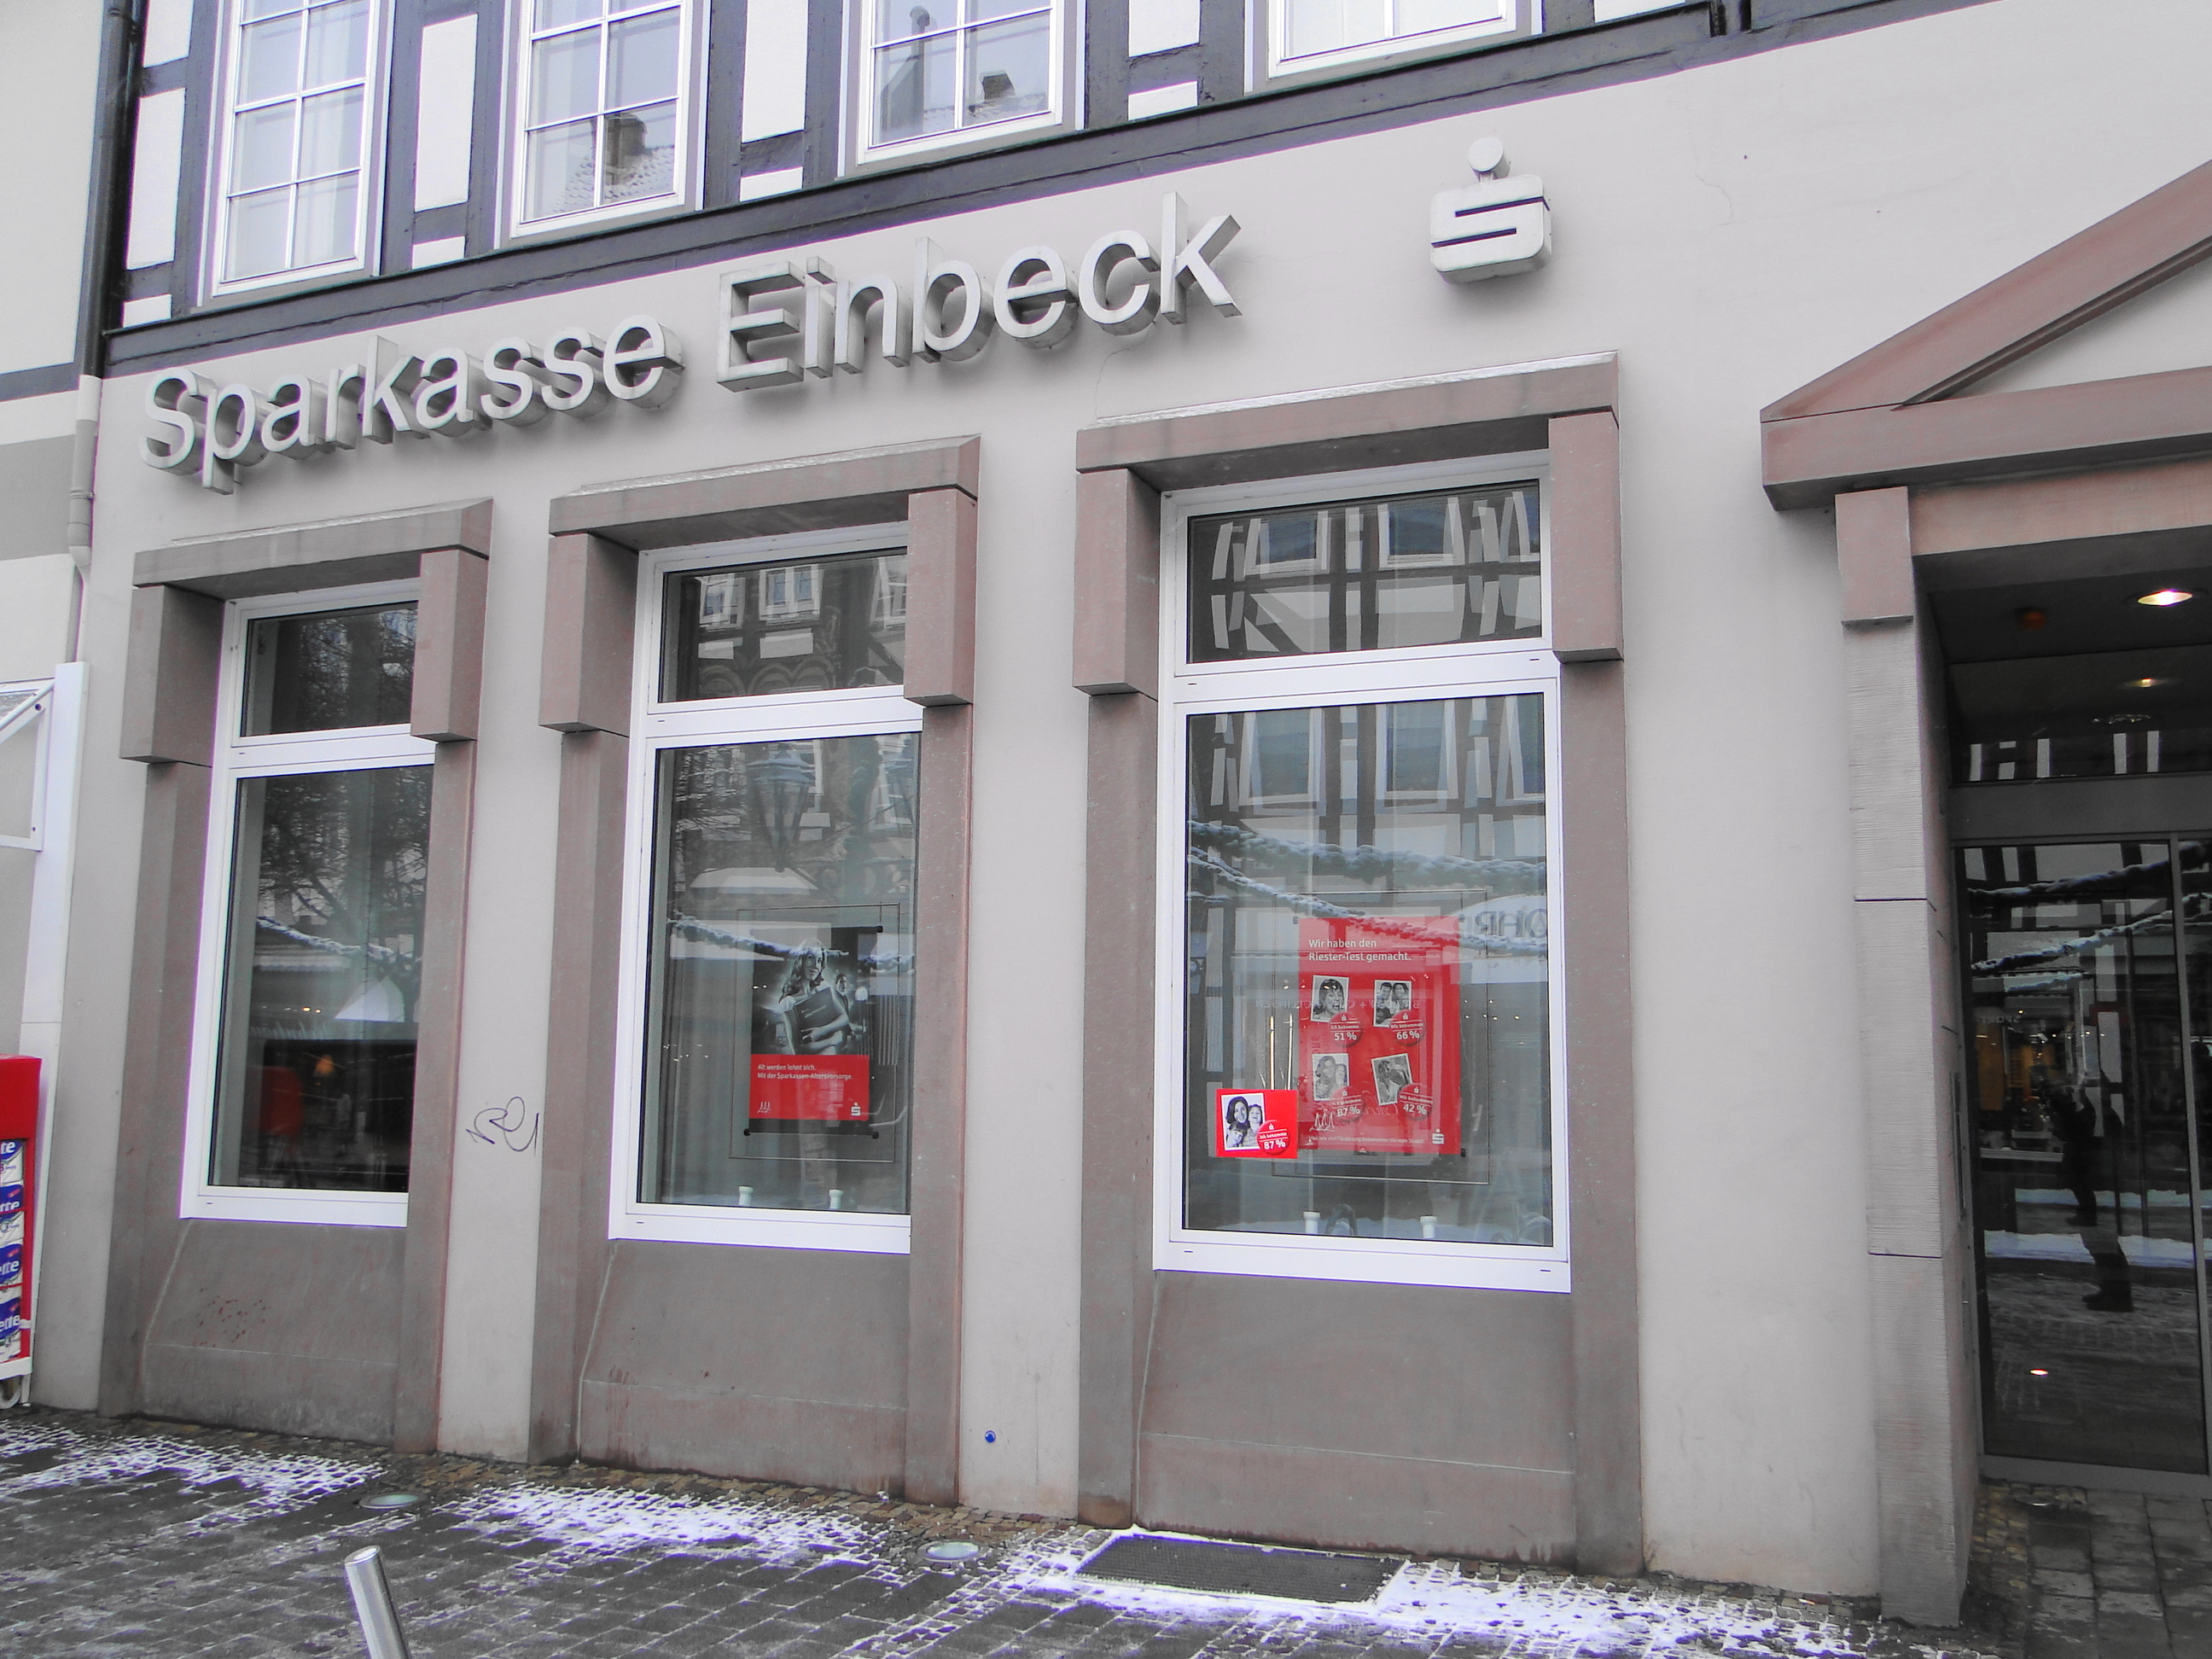 Sparkasse Filiale Einbeck, Marktplatz 16 - 18